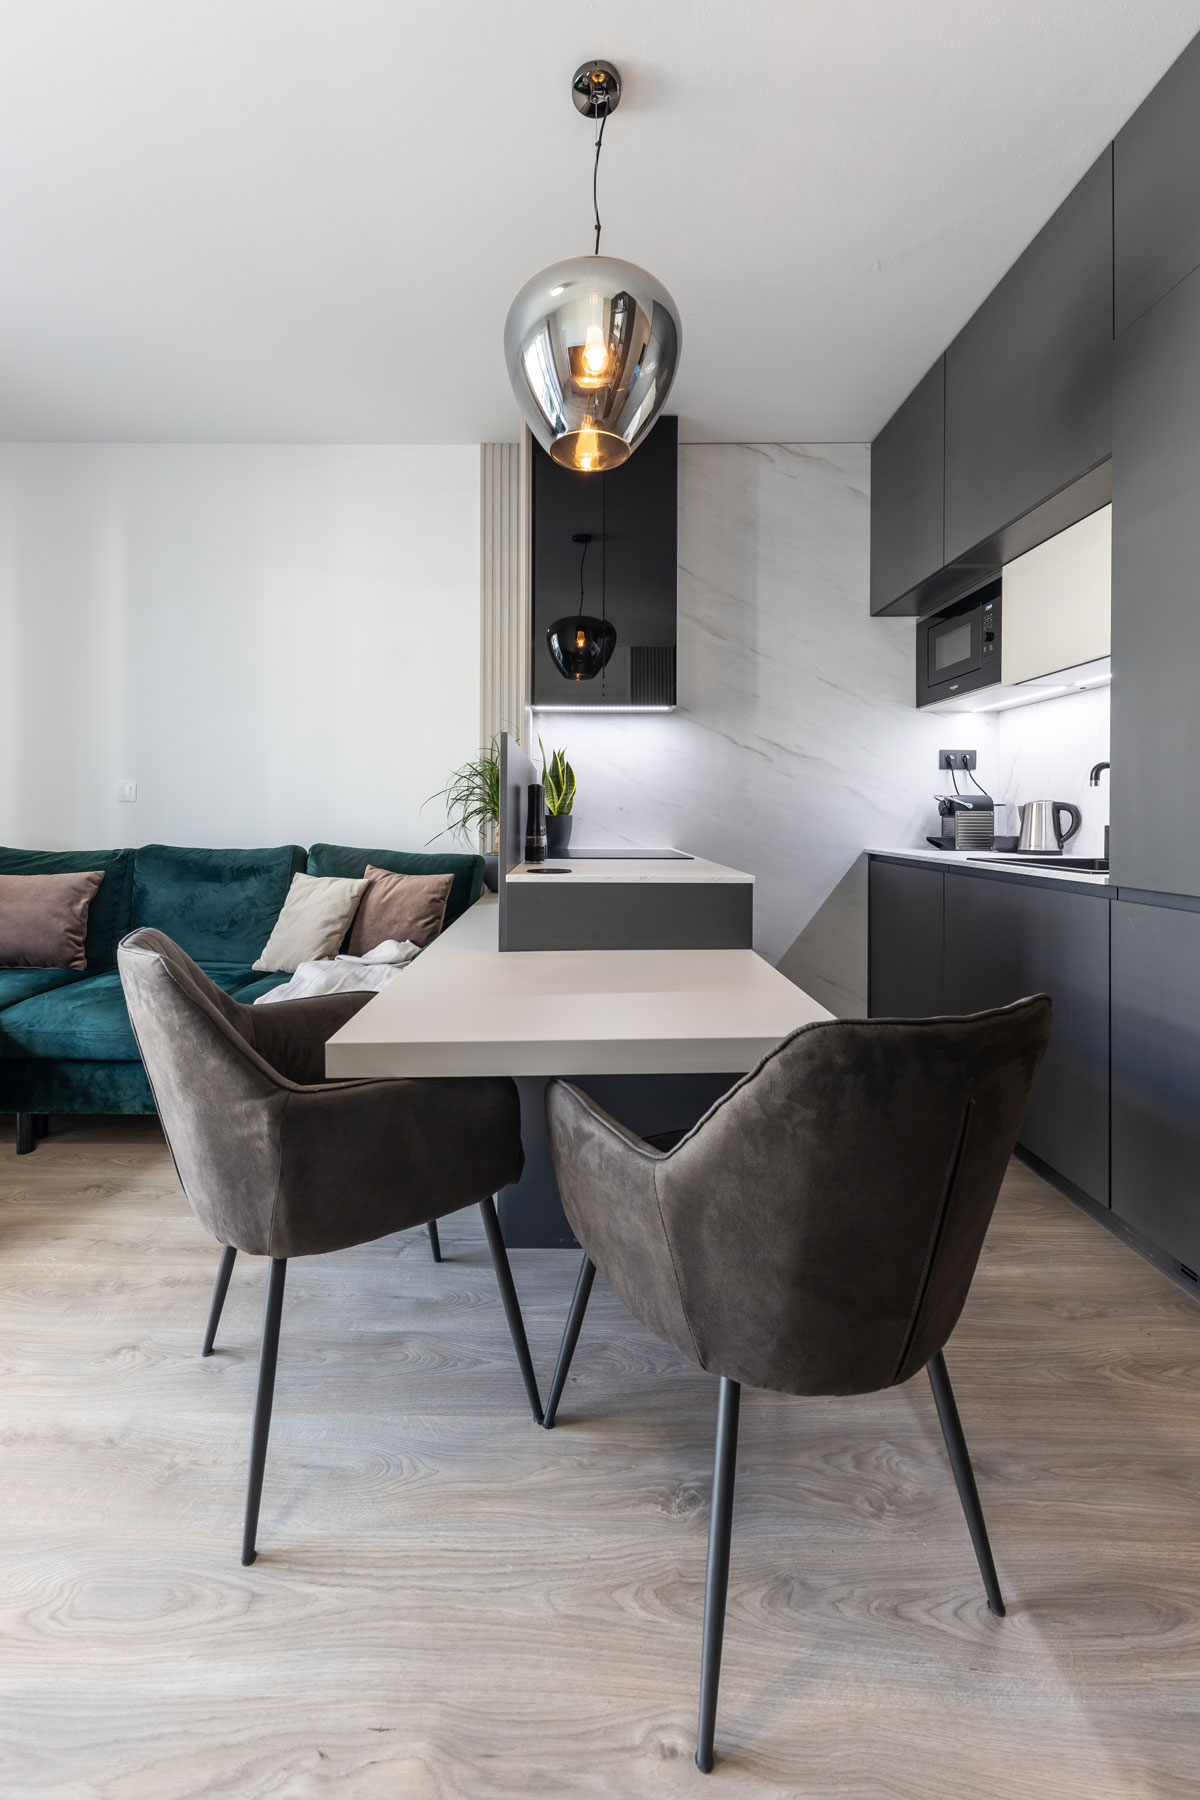 moderný malý byt s minimalistickou kuchynskou linkou v tmavej farbe, oproti je polostrov s čalúnenými stoličkami, ten oddeľuje kuchyňu od obývačky s tmavozelenou sedačkou